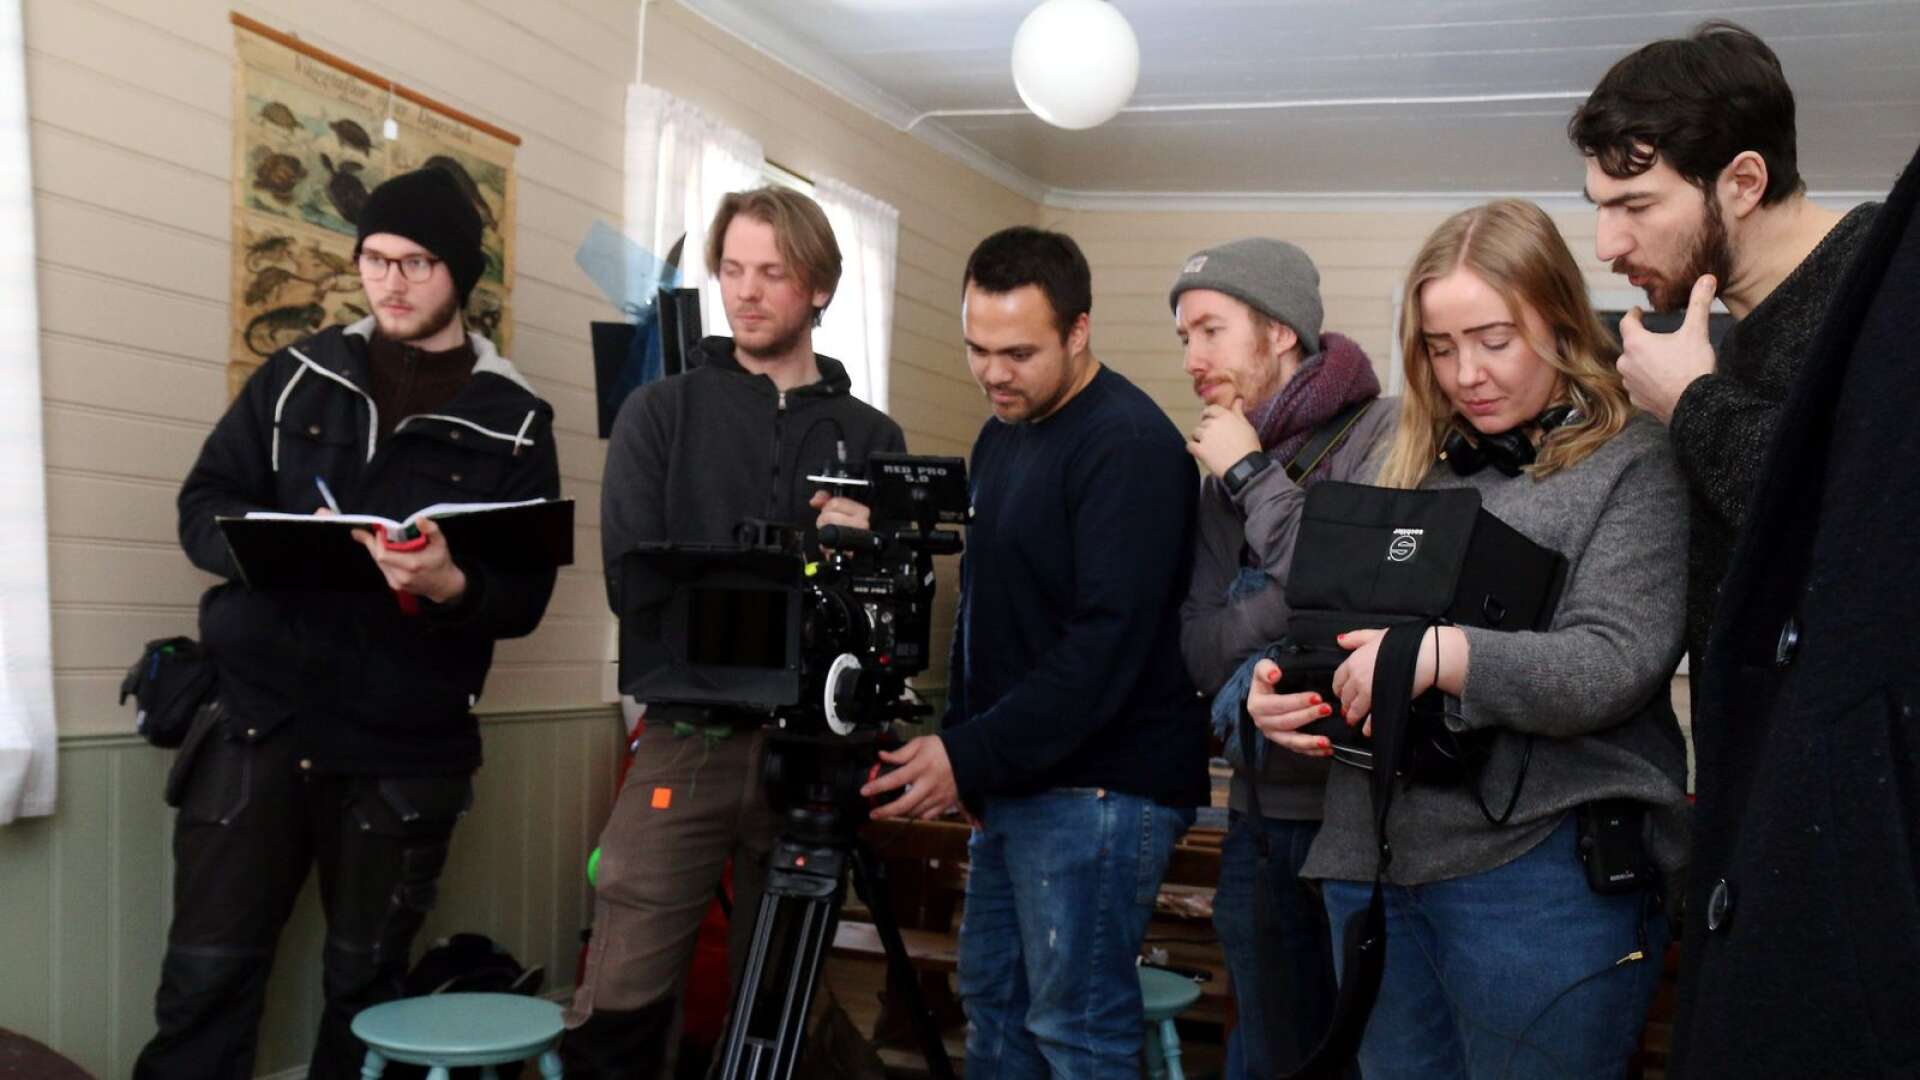 Filmteamet bakom kortfilmen om Brissander är bland andra Oscar Andersson, ljud, Carl Olsson och Erik Lundgren, foto, John Thornblad, projektledare, Elin Thornblad, regissör, och Johan Fågelström, projektledare.